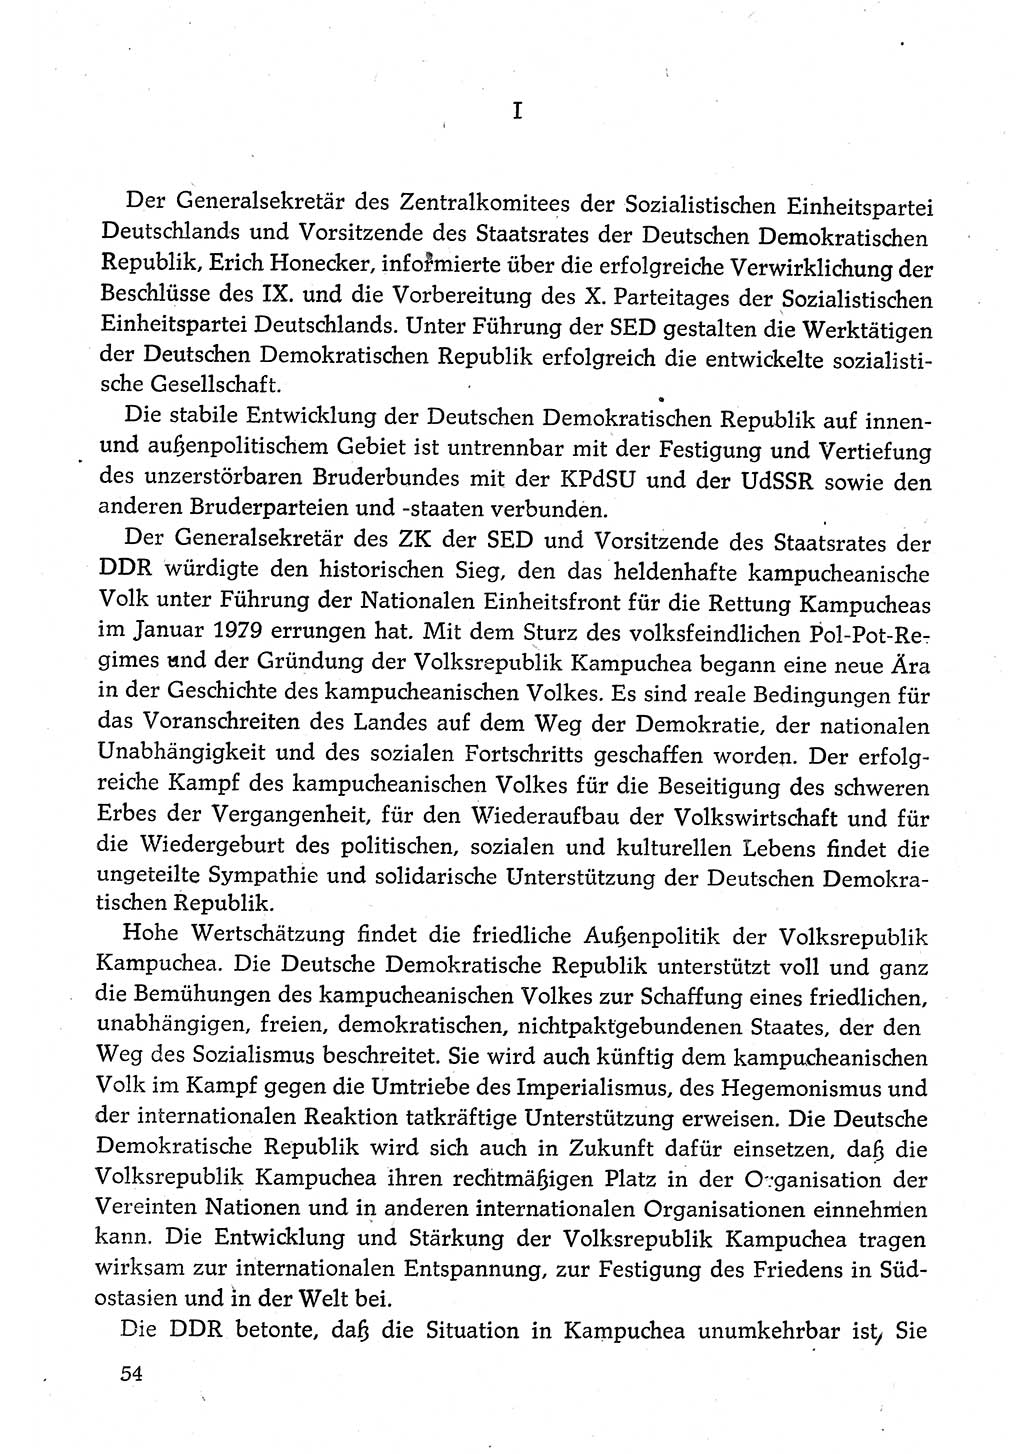 Dokumente der Sozialistischen Einheitspartei Deutschlands (SED) [Deutsche Demokratische Republik (DDR)] 1980-1981, Seite 54 (Dok. SED DDR 1980-1981, S. 54)